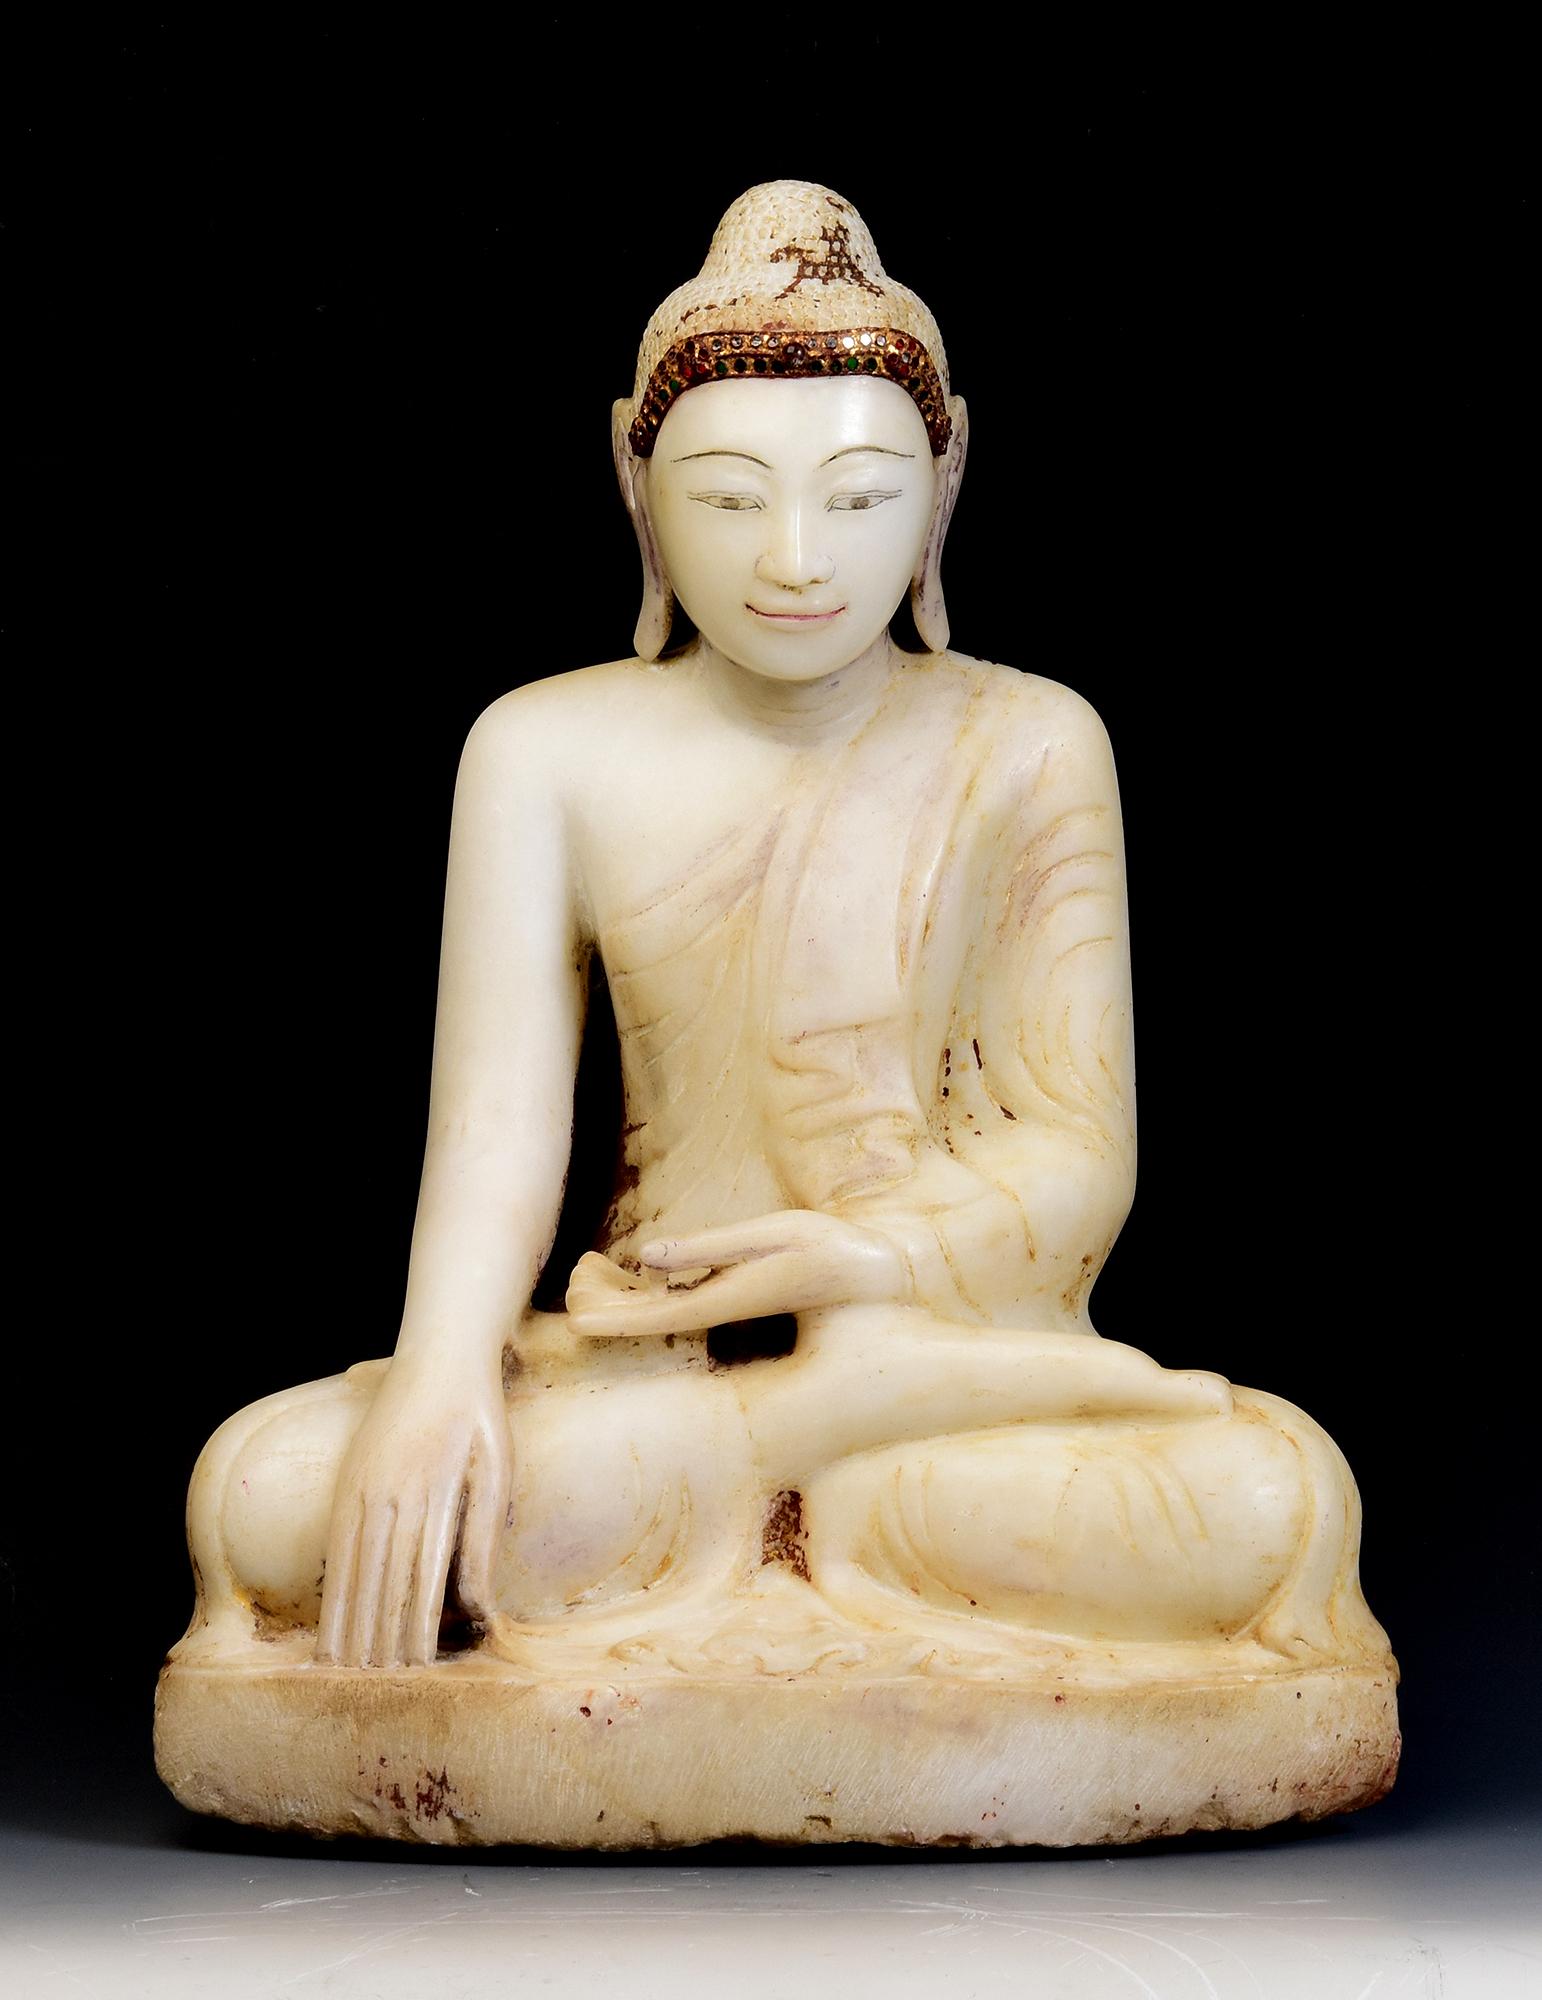 Antiker burmesischer Alabaster-Buddha in Mara-Vijaya-Haltung (die Erde zum Zeugen rufen) auf einem Sockel sitzend, mit Einlage von bunten Glasstücken auf dem Stirnband.

Alter: Birma, Mandalay-Periode, 19. Jahrhundert
Größe: Höhe 49,5 C.M. / Breite